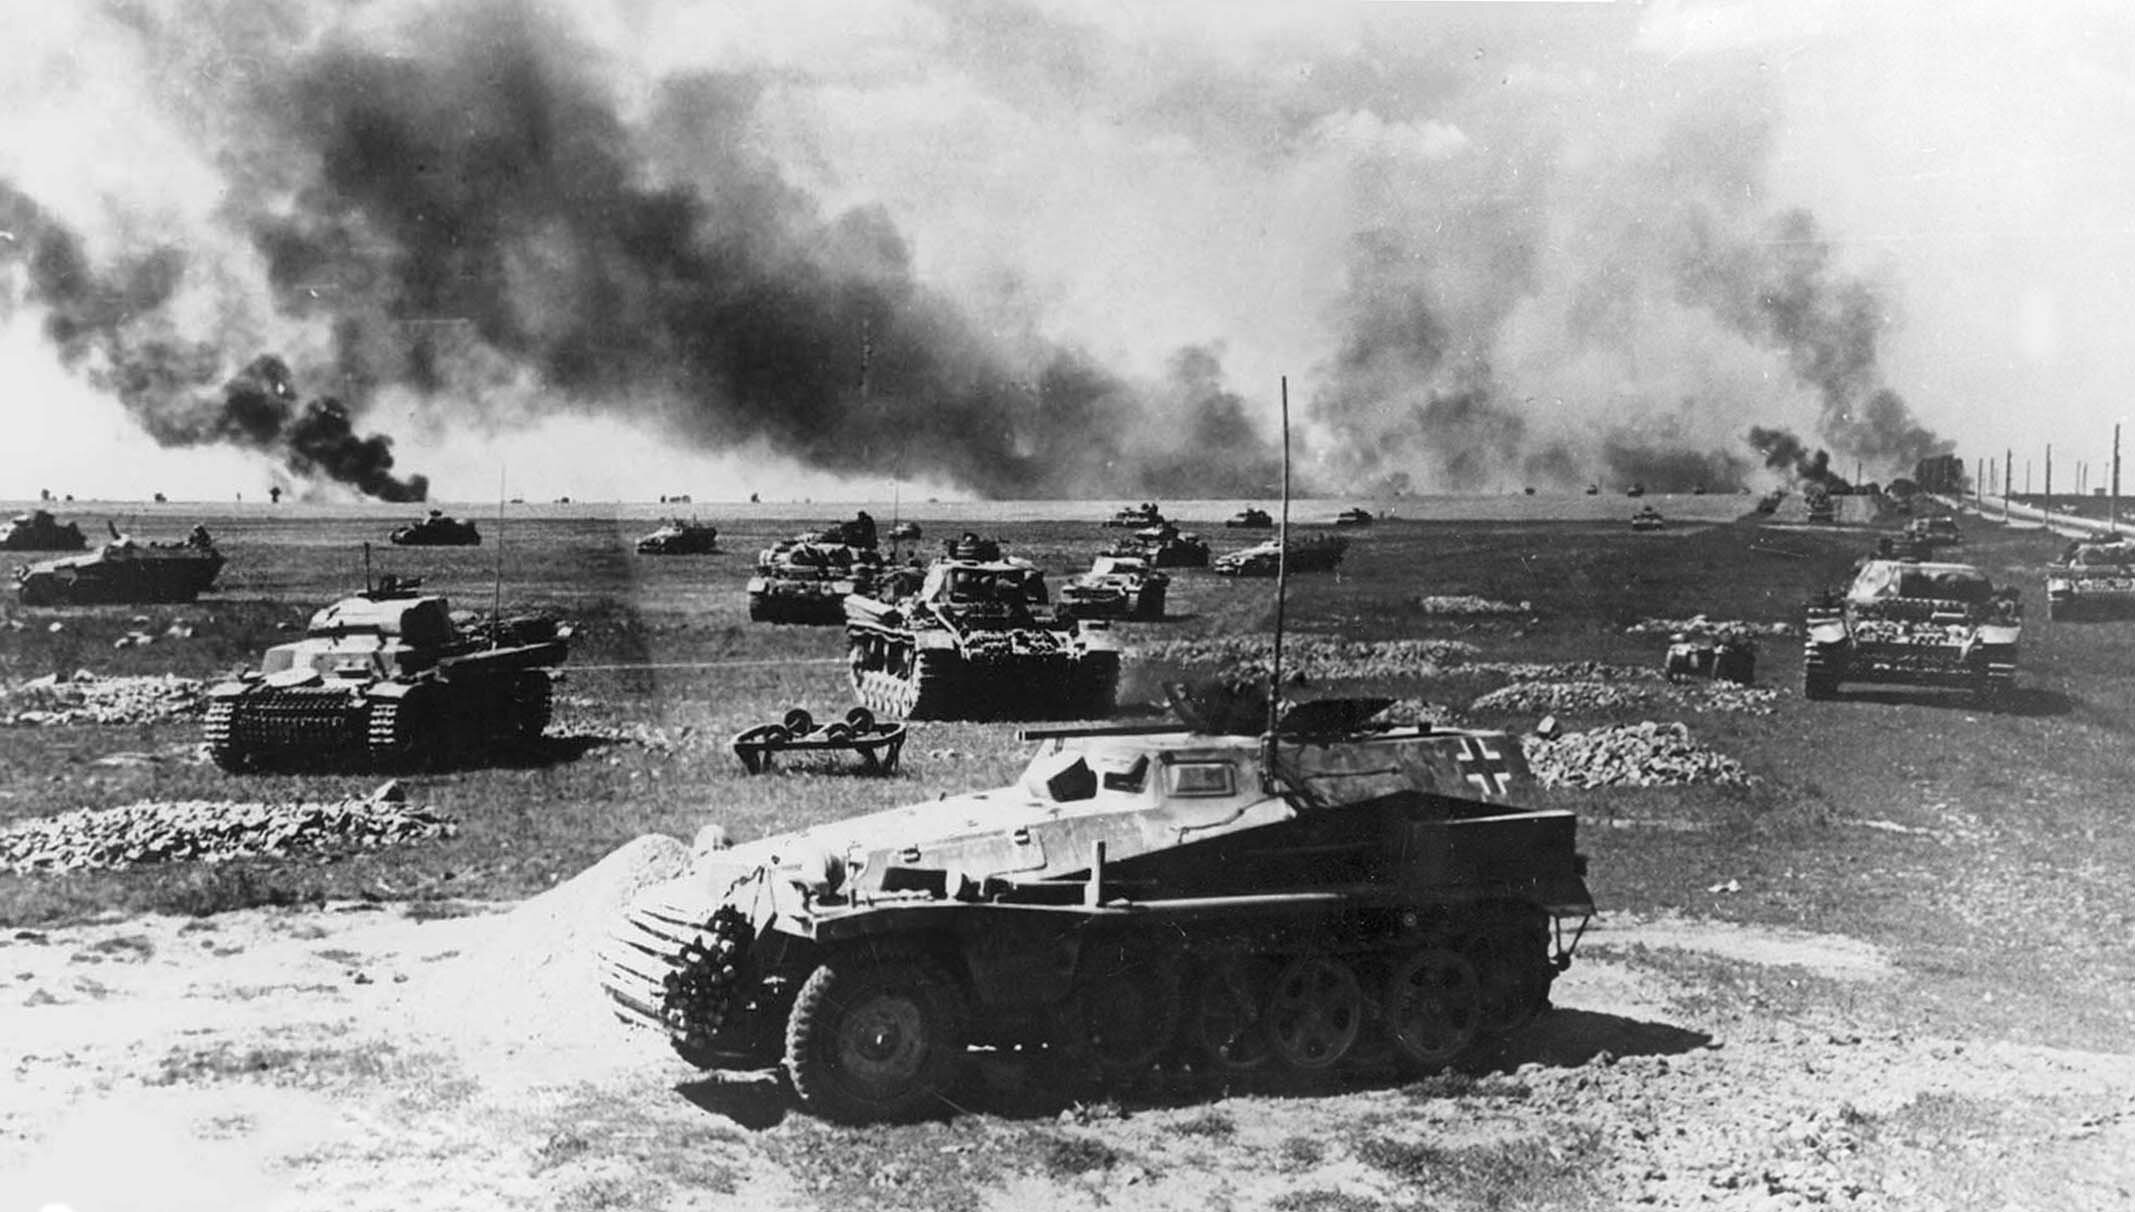 Нападение вов. Танковое сражение под Прохоровкой 12 июля 1943 г.. Смоленская битва 1941. Битва под Смоленском 1941. Operation Barbarossa 1941.